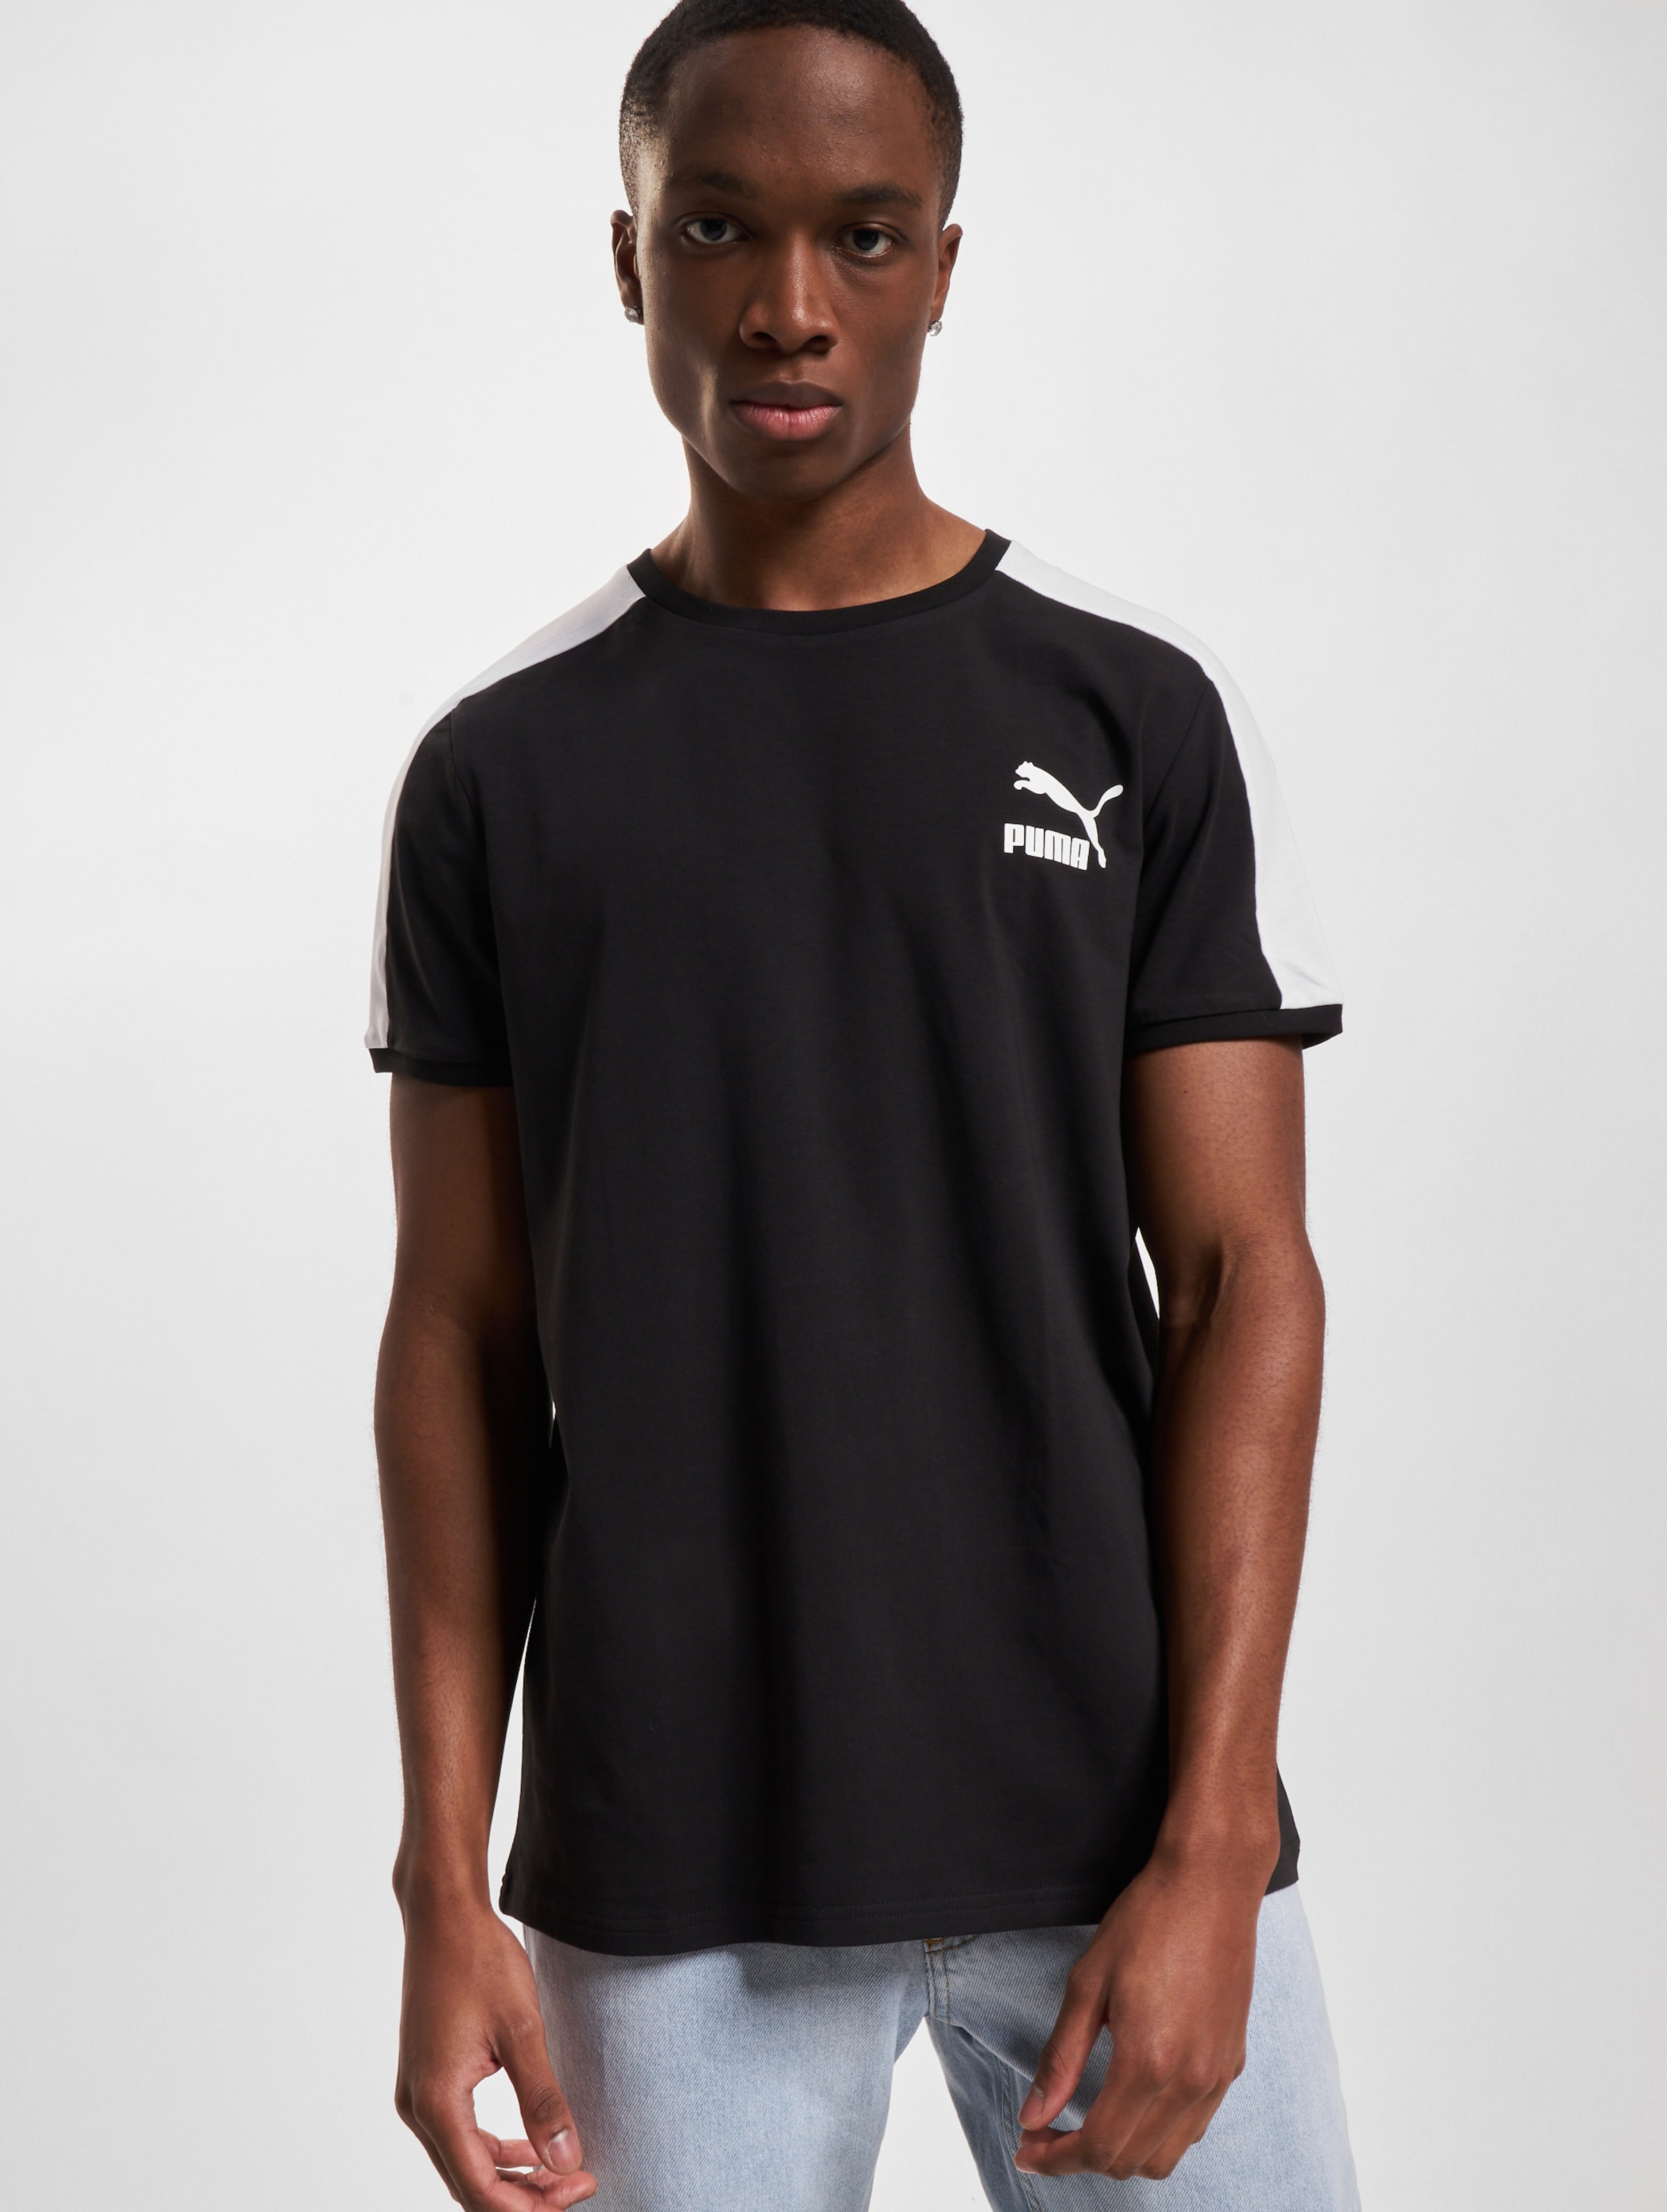 Puma T-Shirt Mannen op kleur zwart, Maat XXL